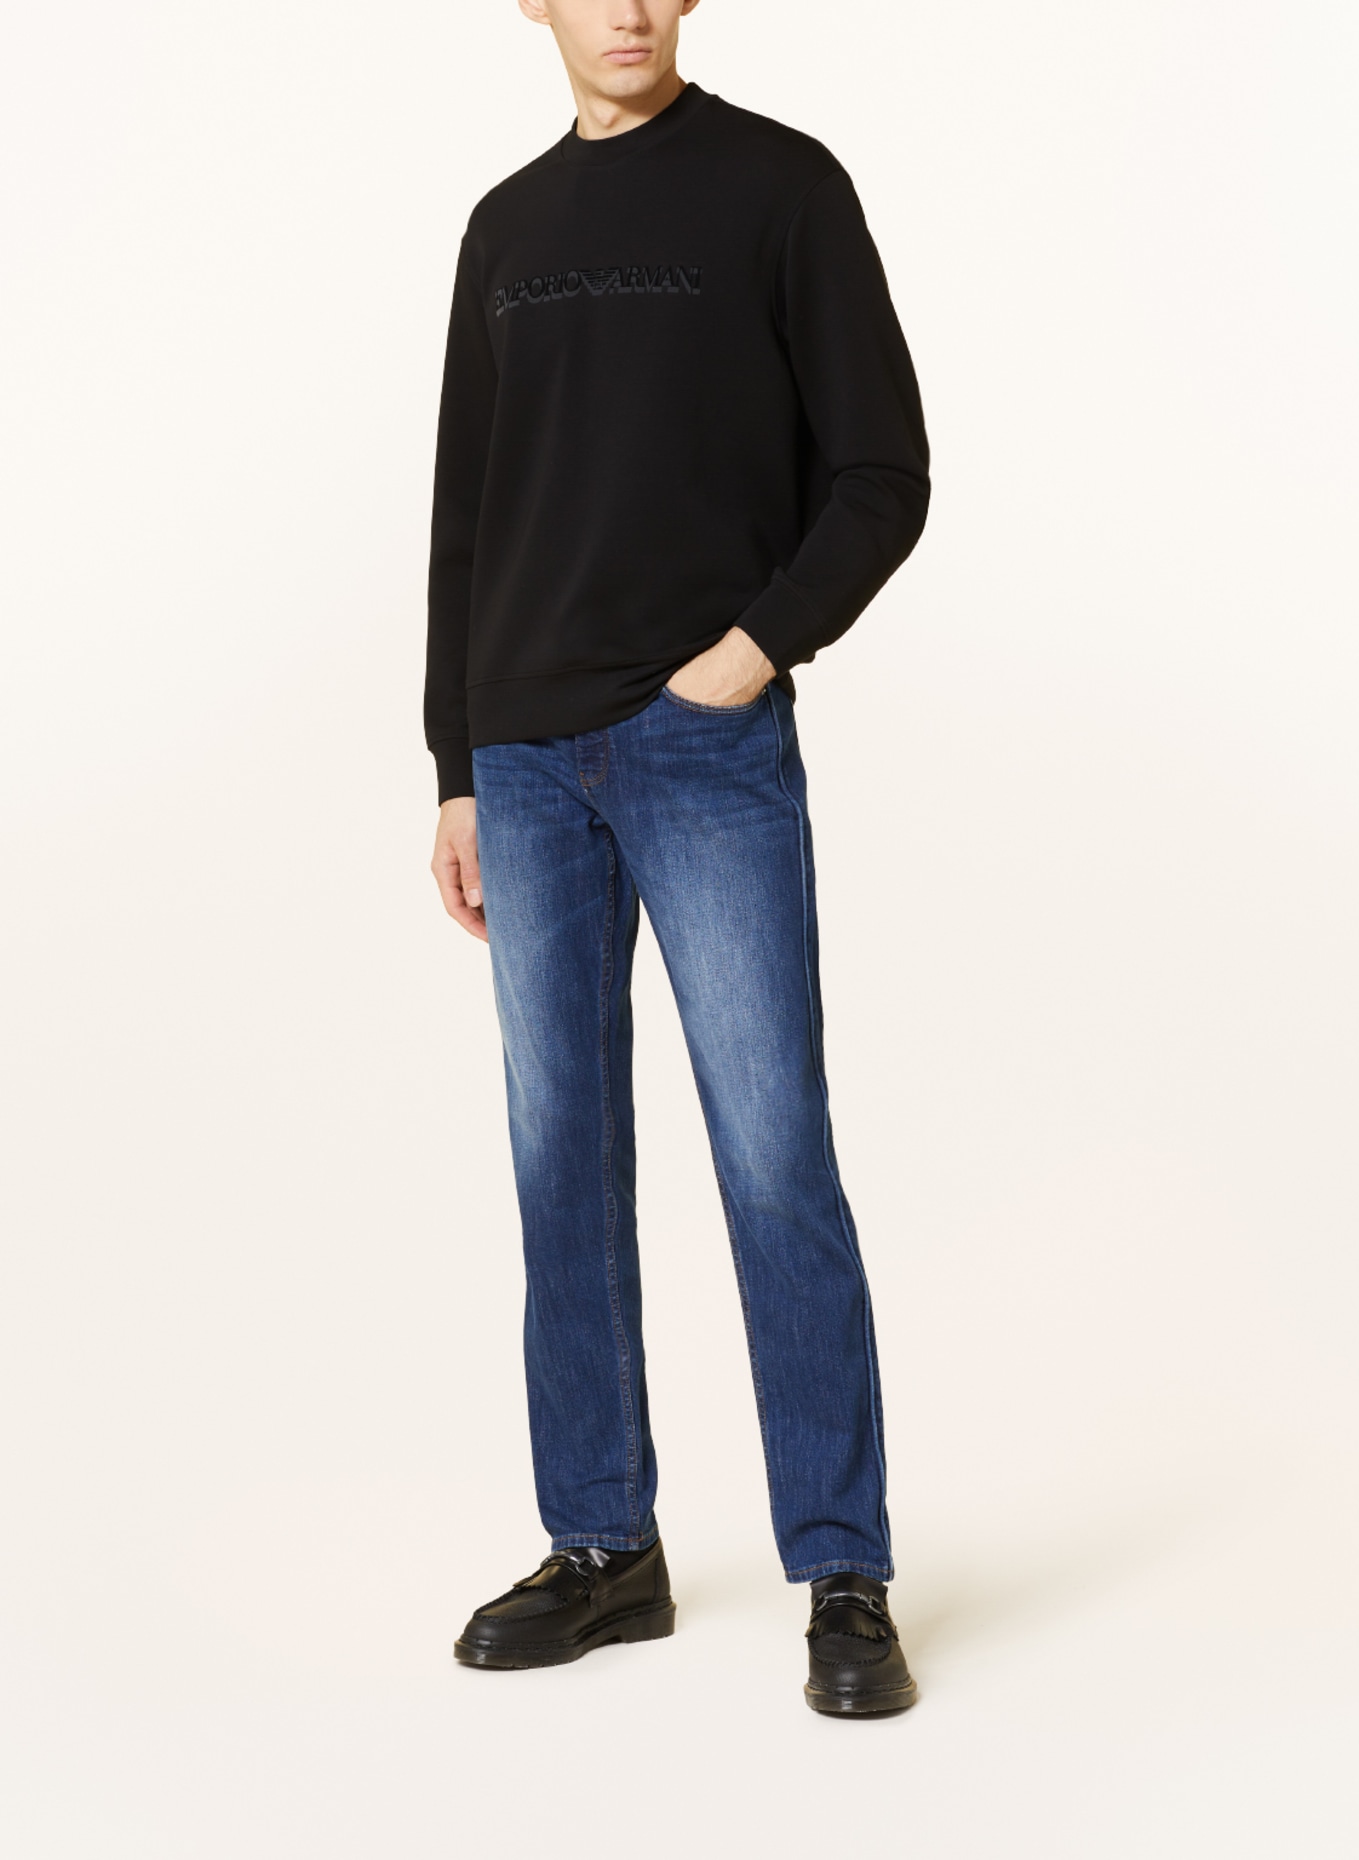 EMPORIO ARMANI Sweatshirt, Color: BLACK (Image 2)